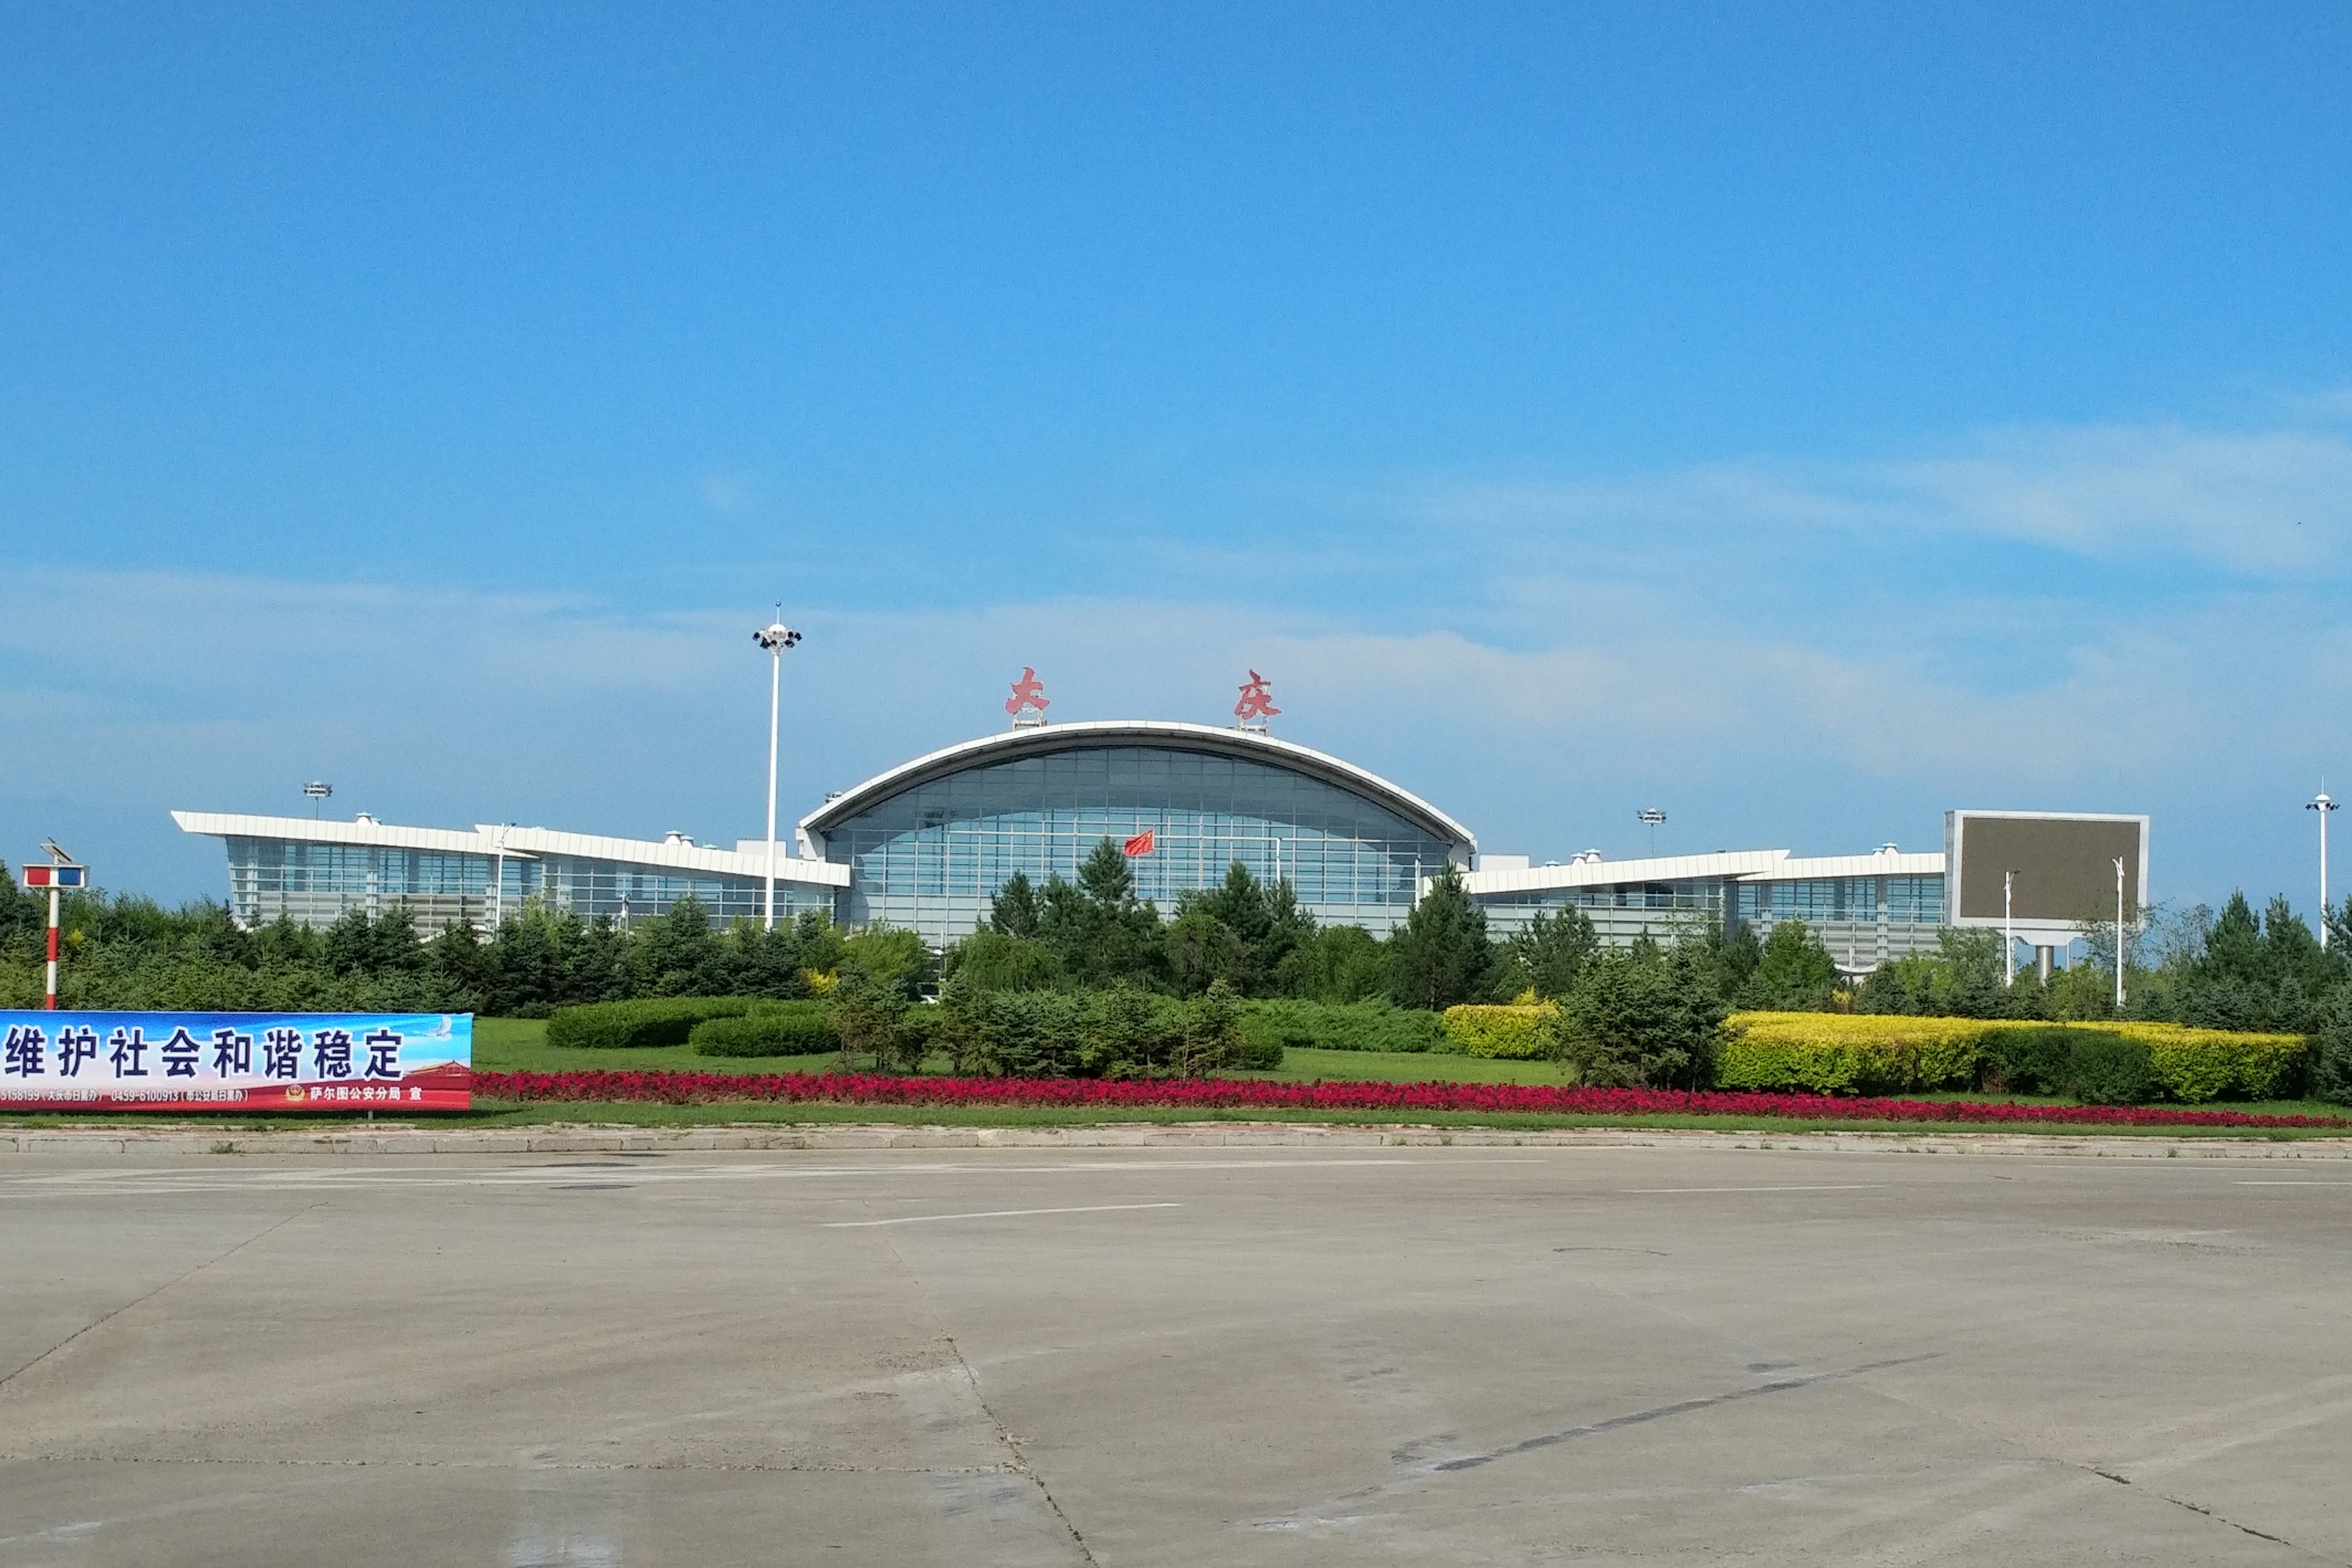 总叨叨大庆飞机场为您提供出行另一种选择您应该去看看